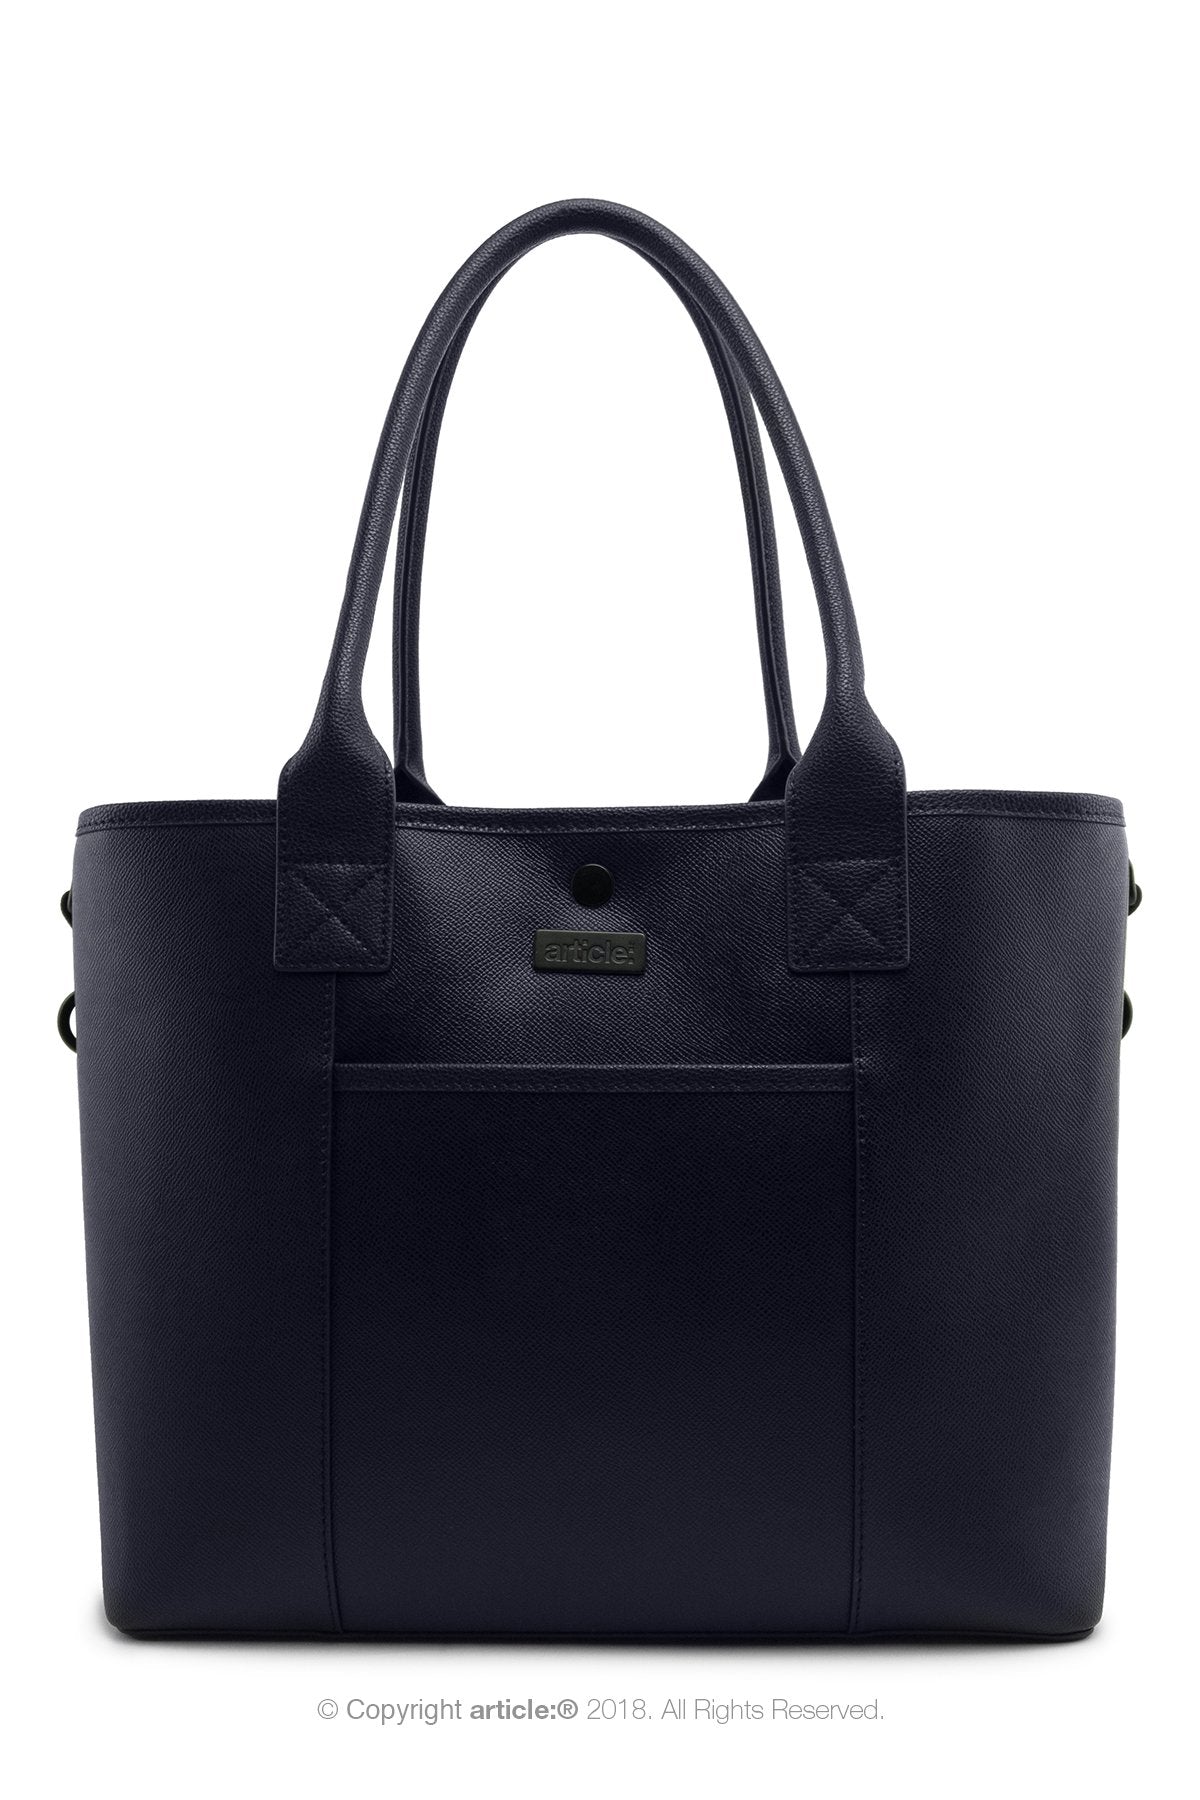 article: #150 Handbag Tote - Indigo